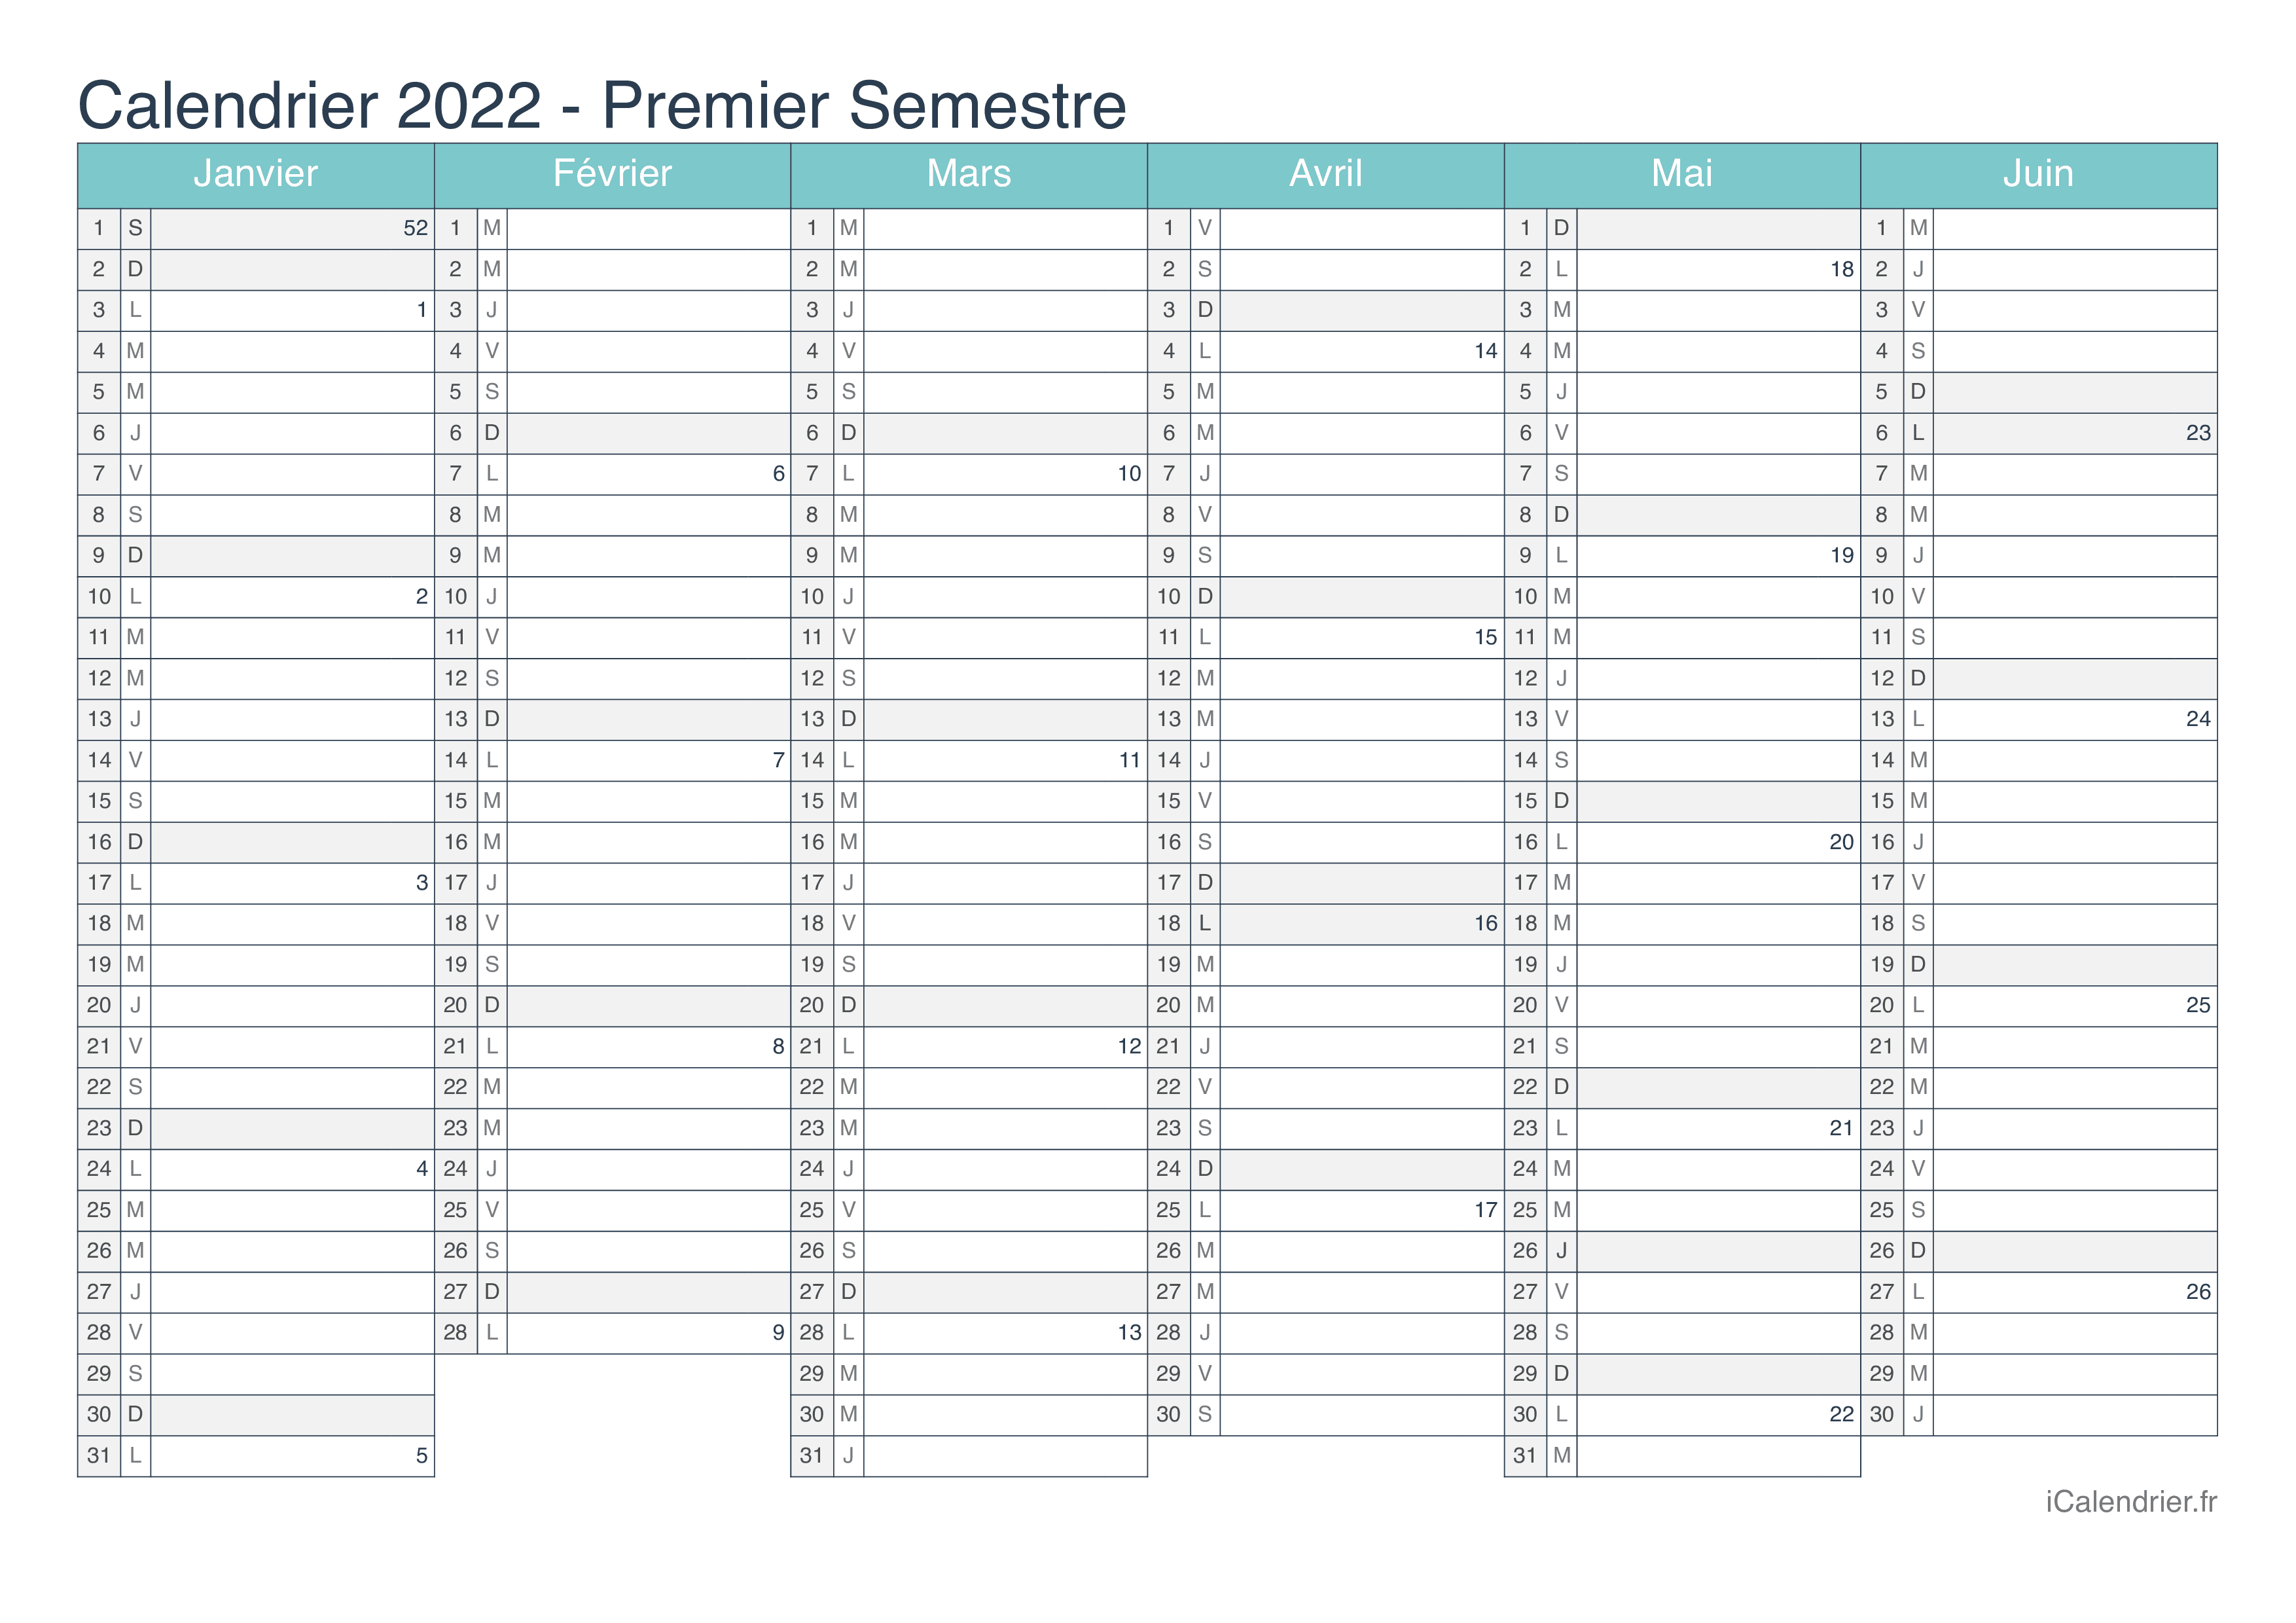 Calendrier par semestre avec numéros des semaines 2022 - Turquoise